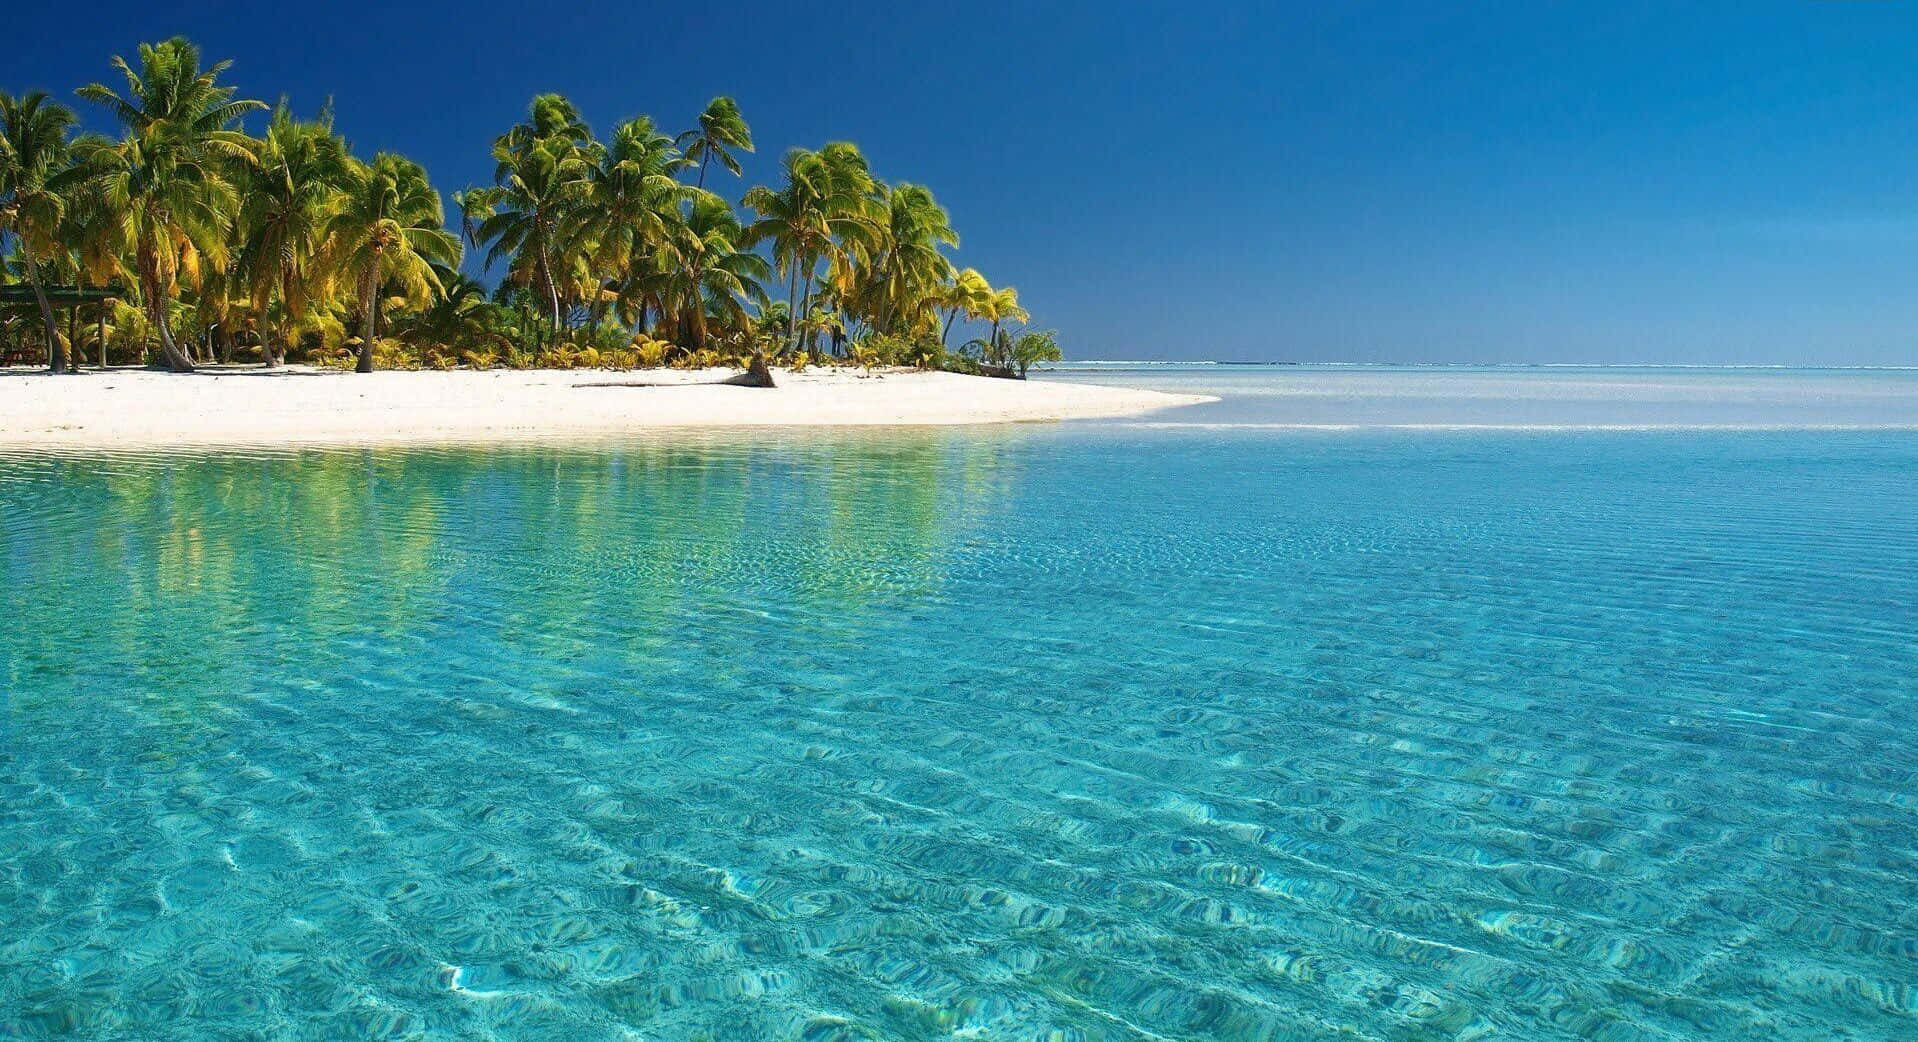 Einidyllischer Strand Mit Azurblauem Wasser Und Weißem Sand.